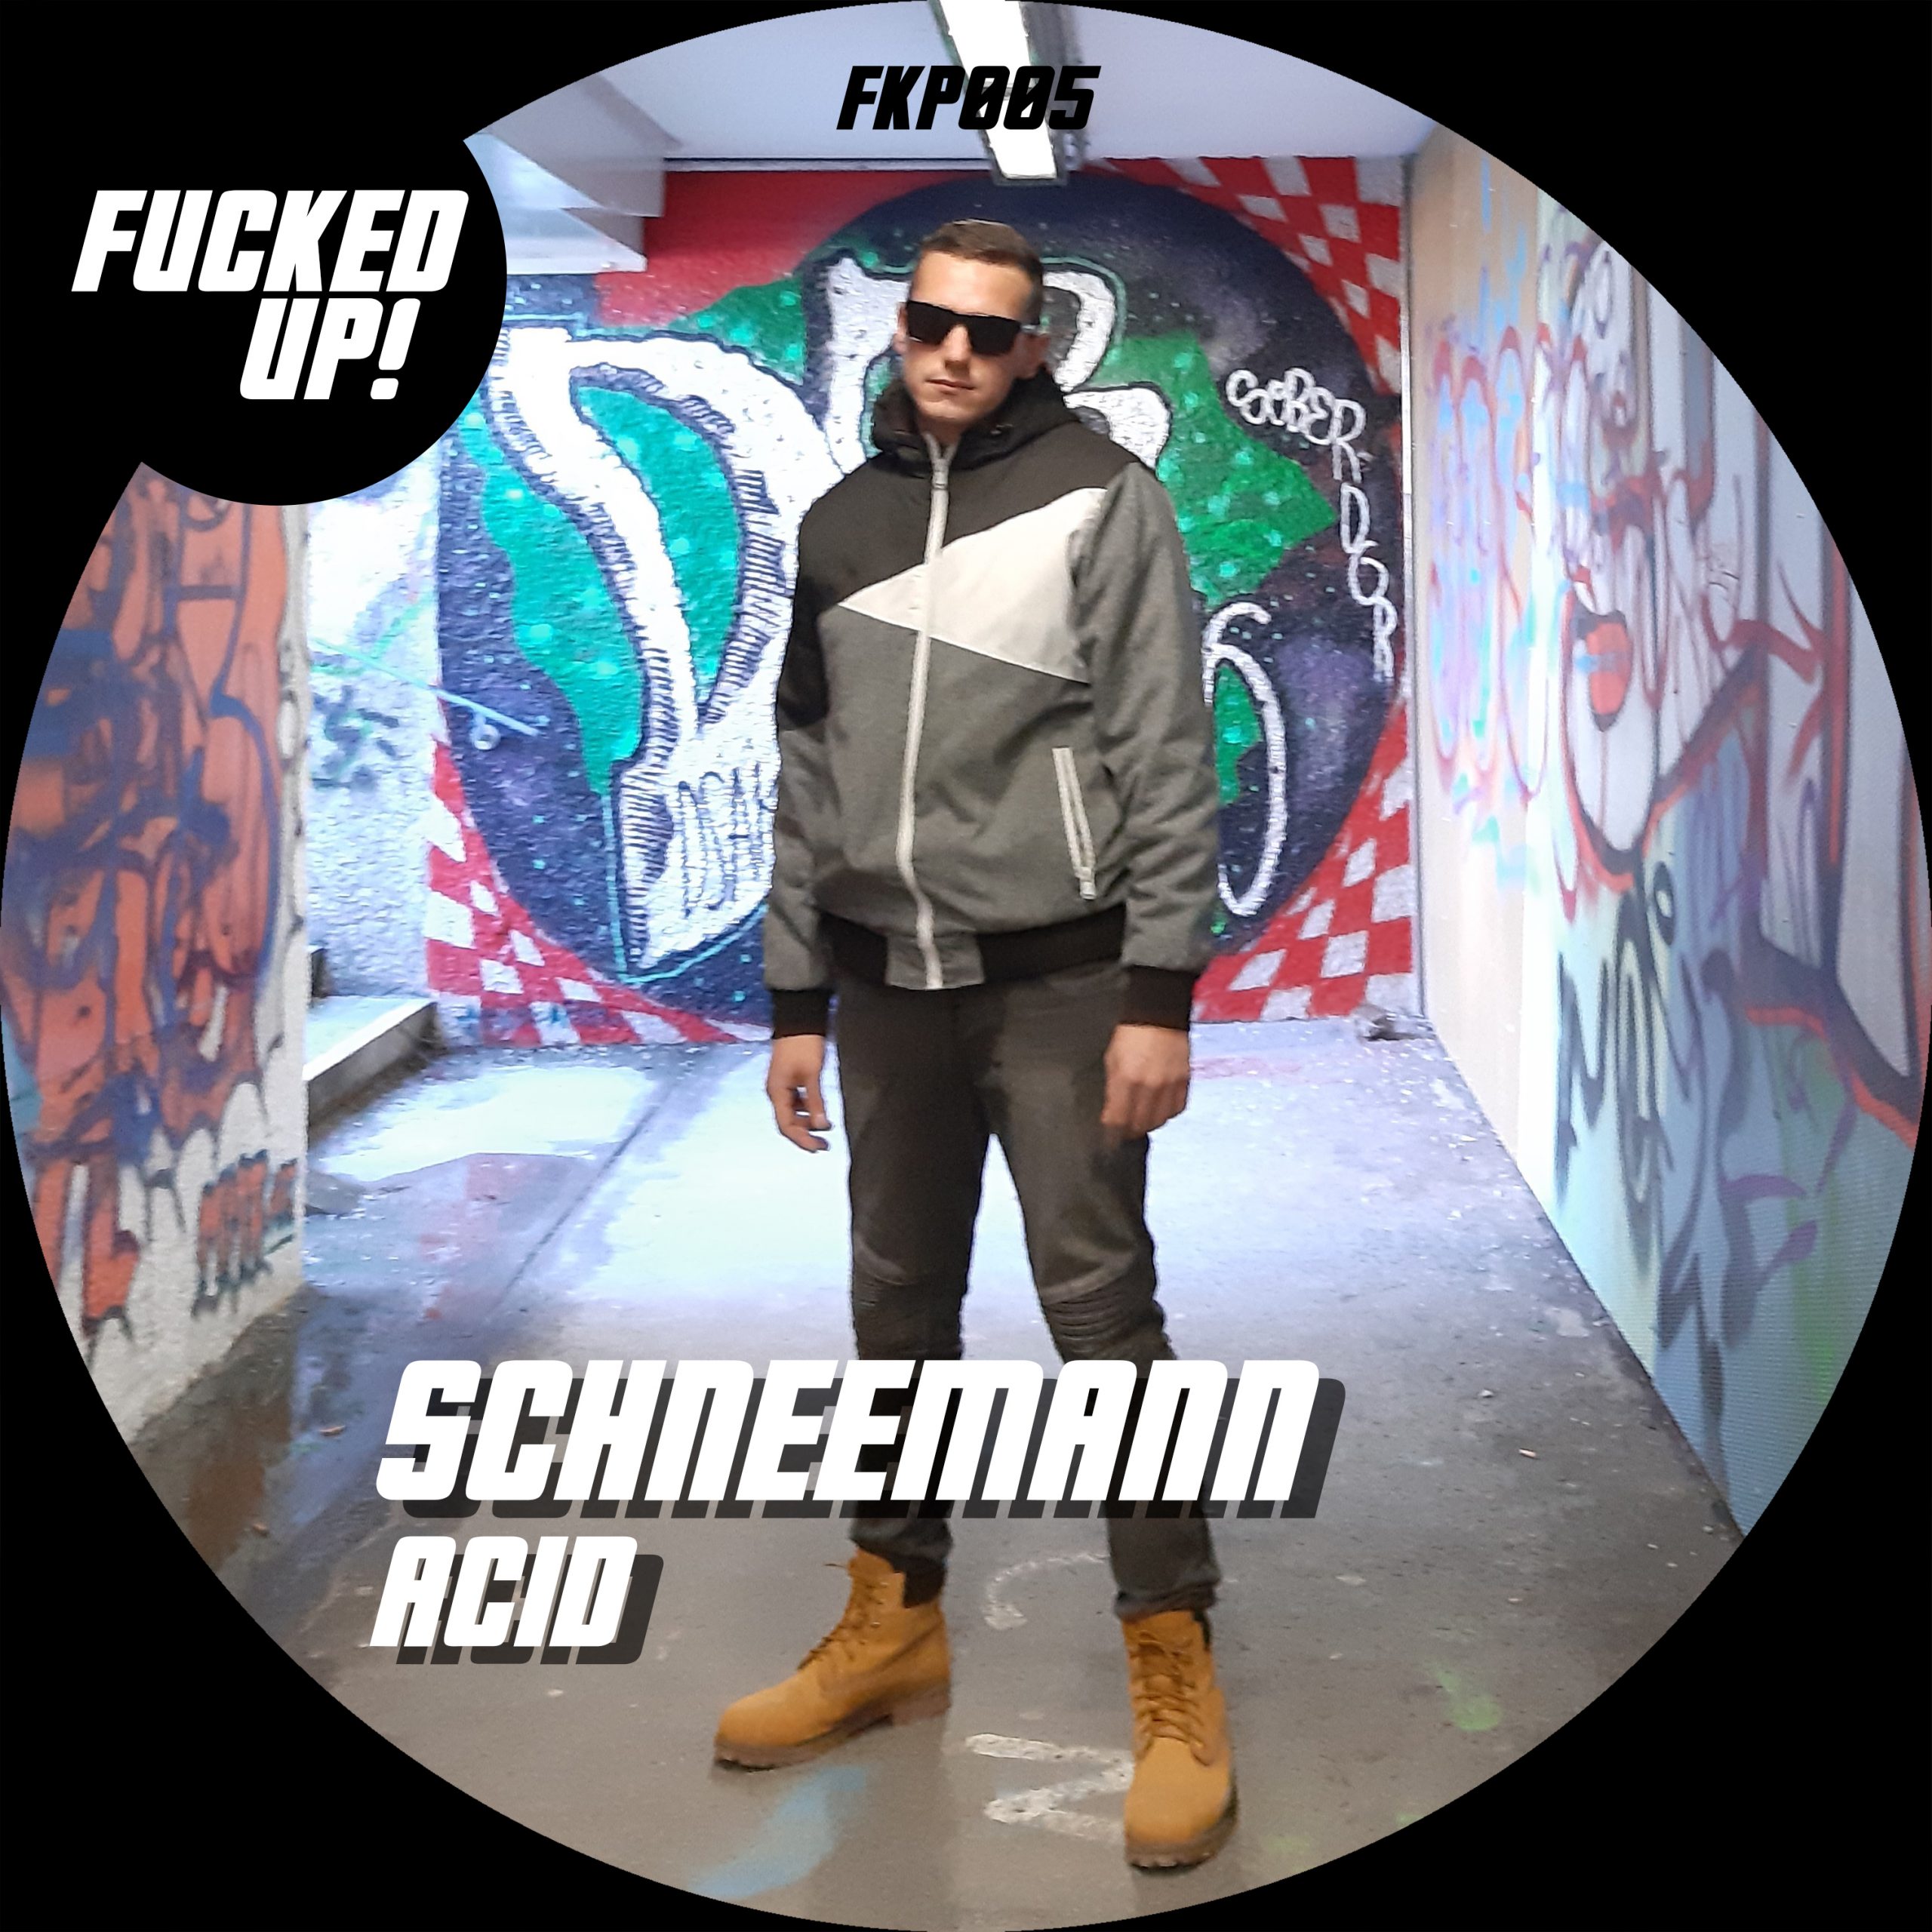 FKP005 Schneemann Acid scaled